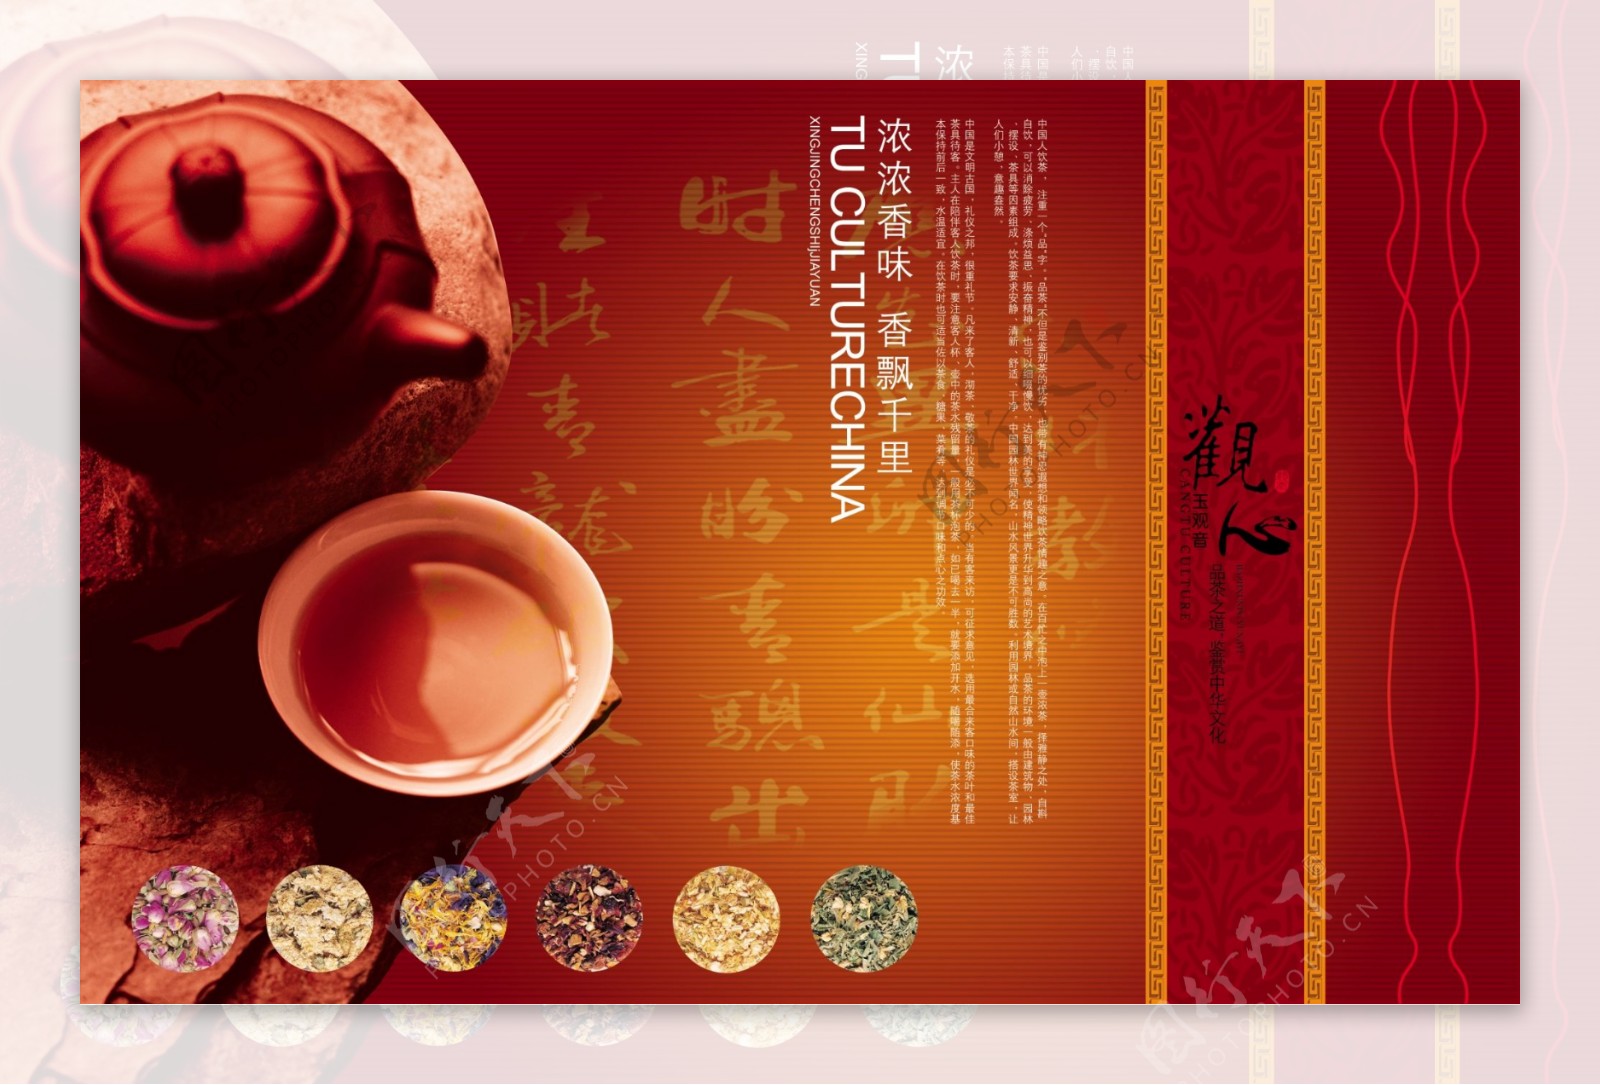 茶文化宣传海报设计图片